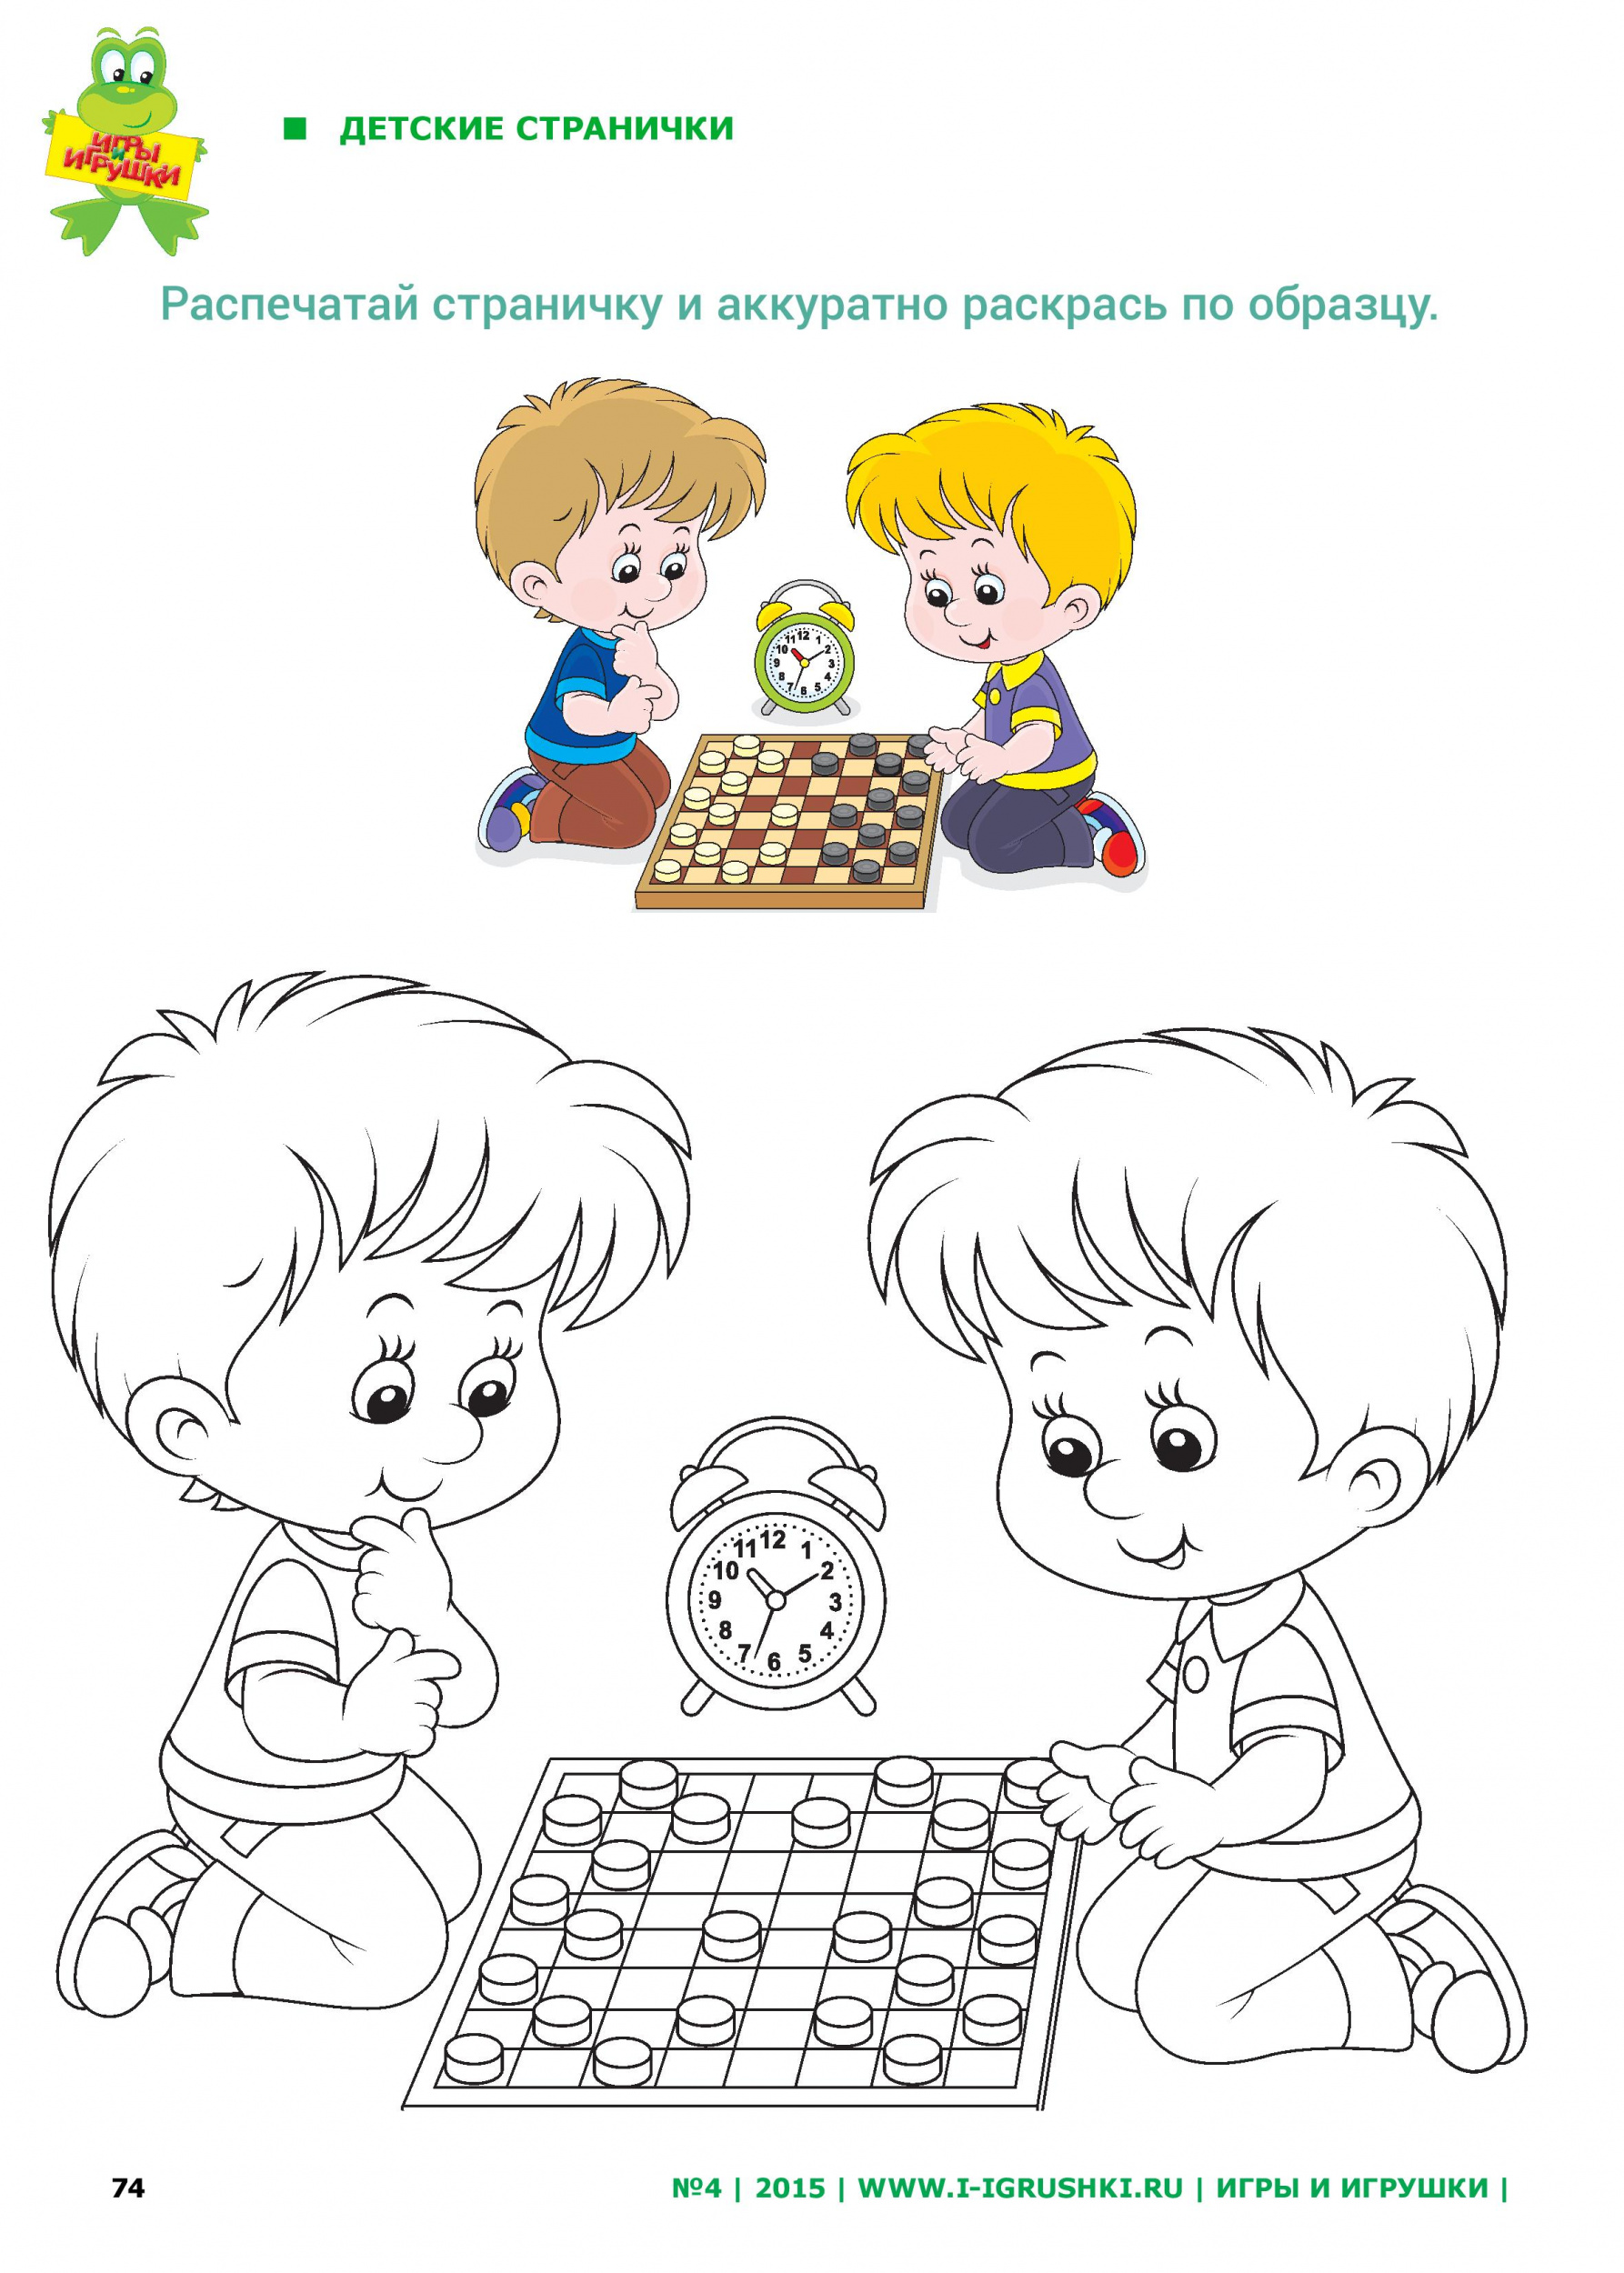 Раскрась шахматистов по образцу